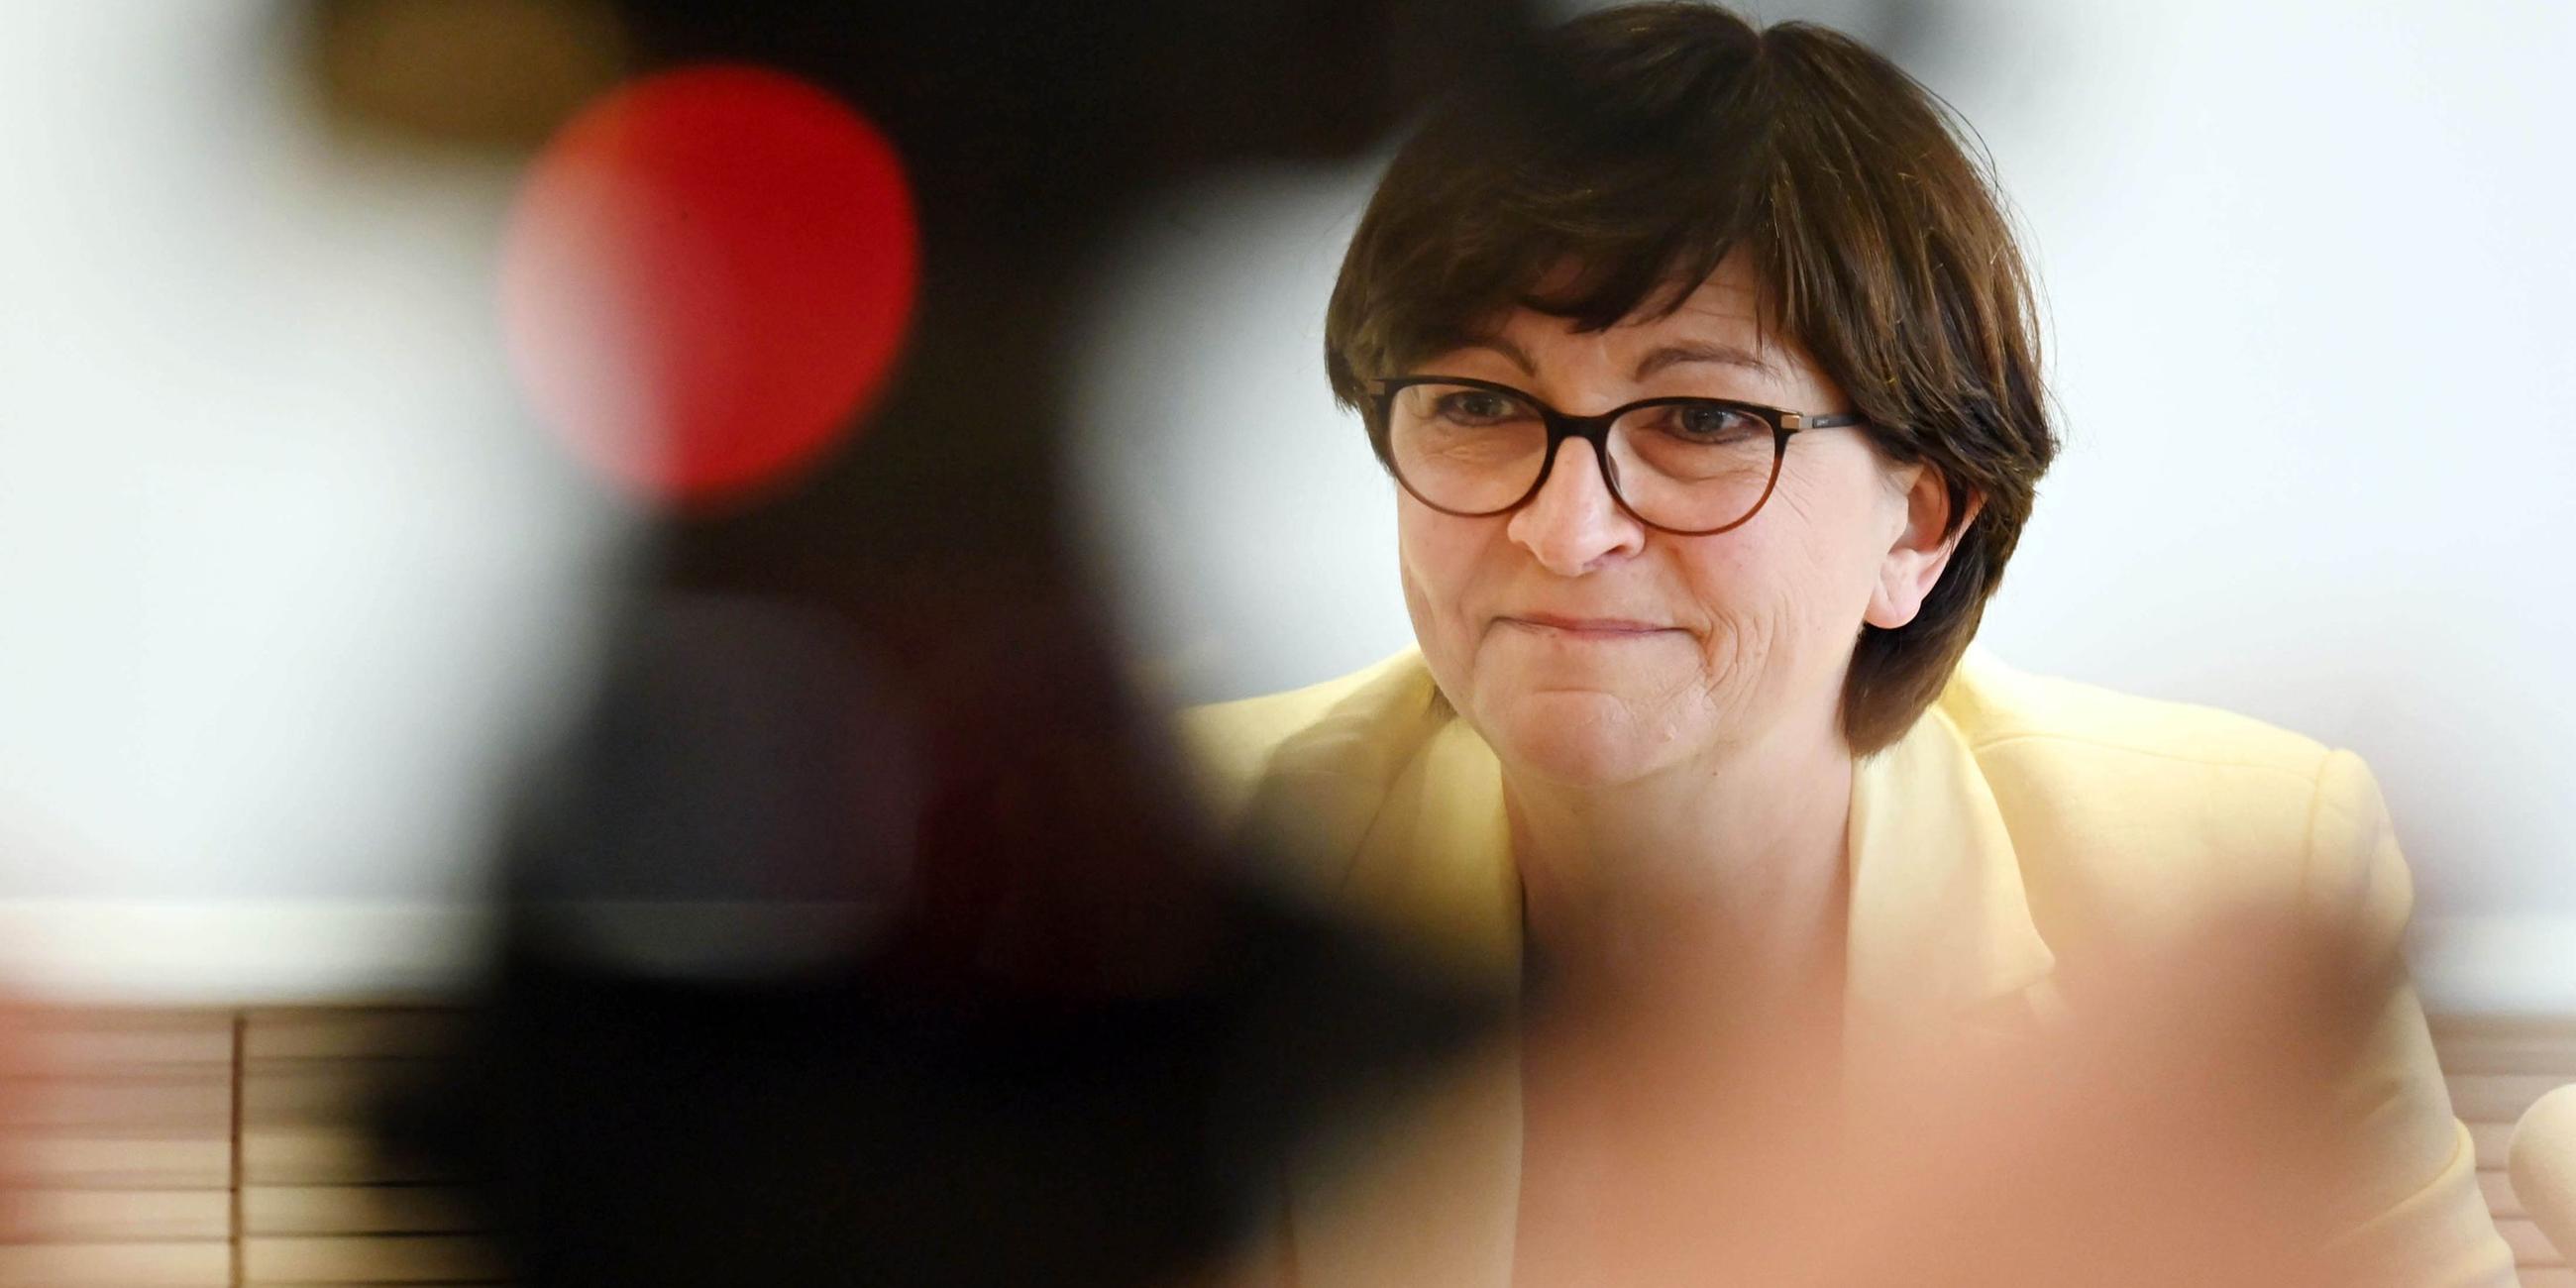 Saskia Esken, SPD Parteivorsitzende